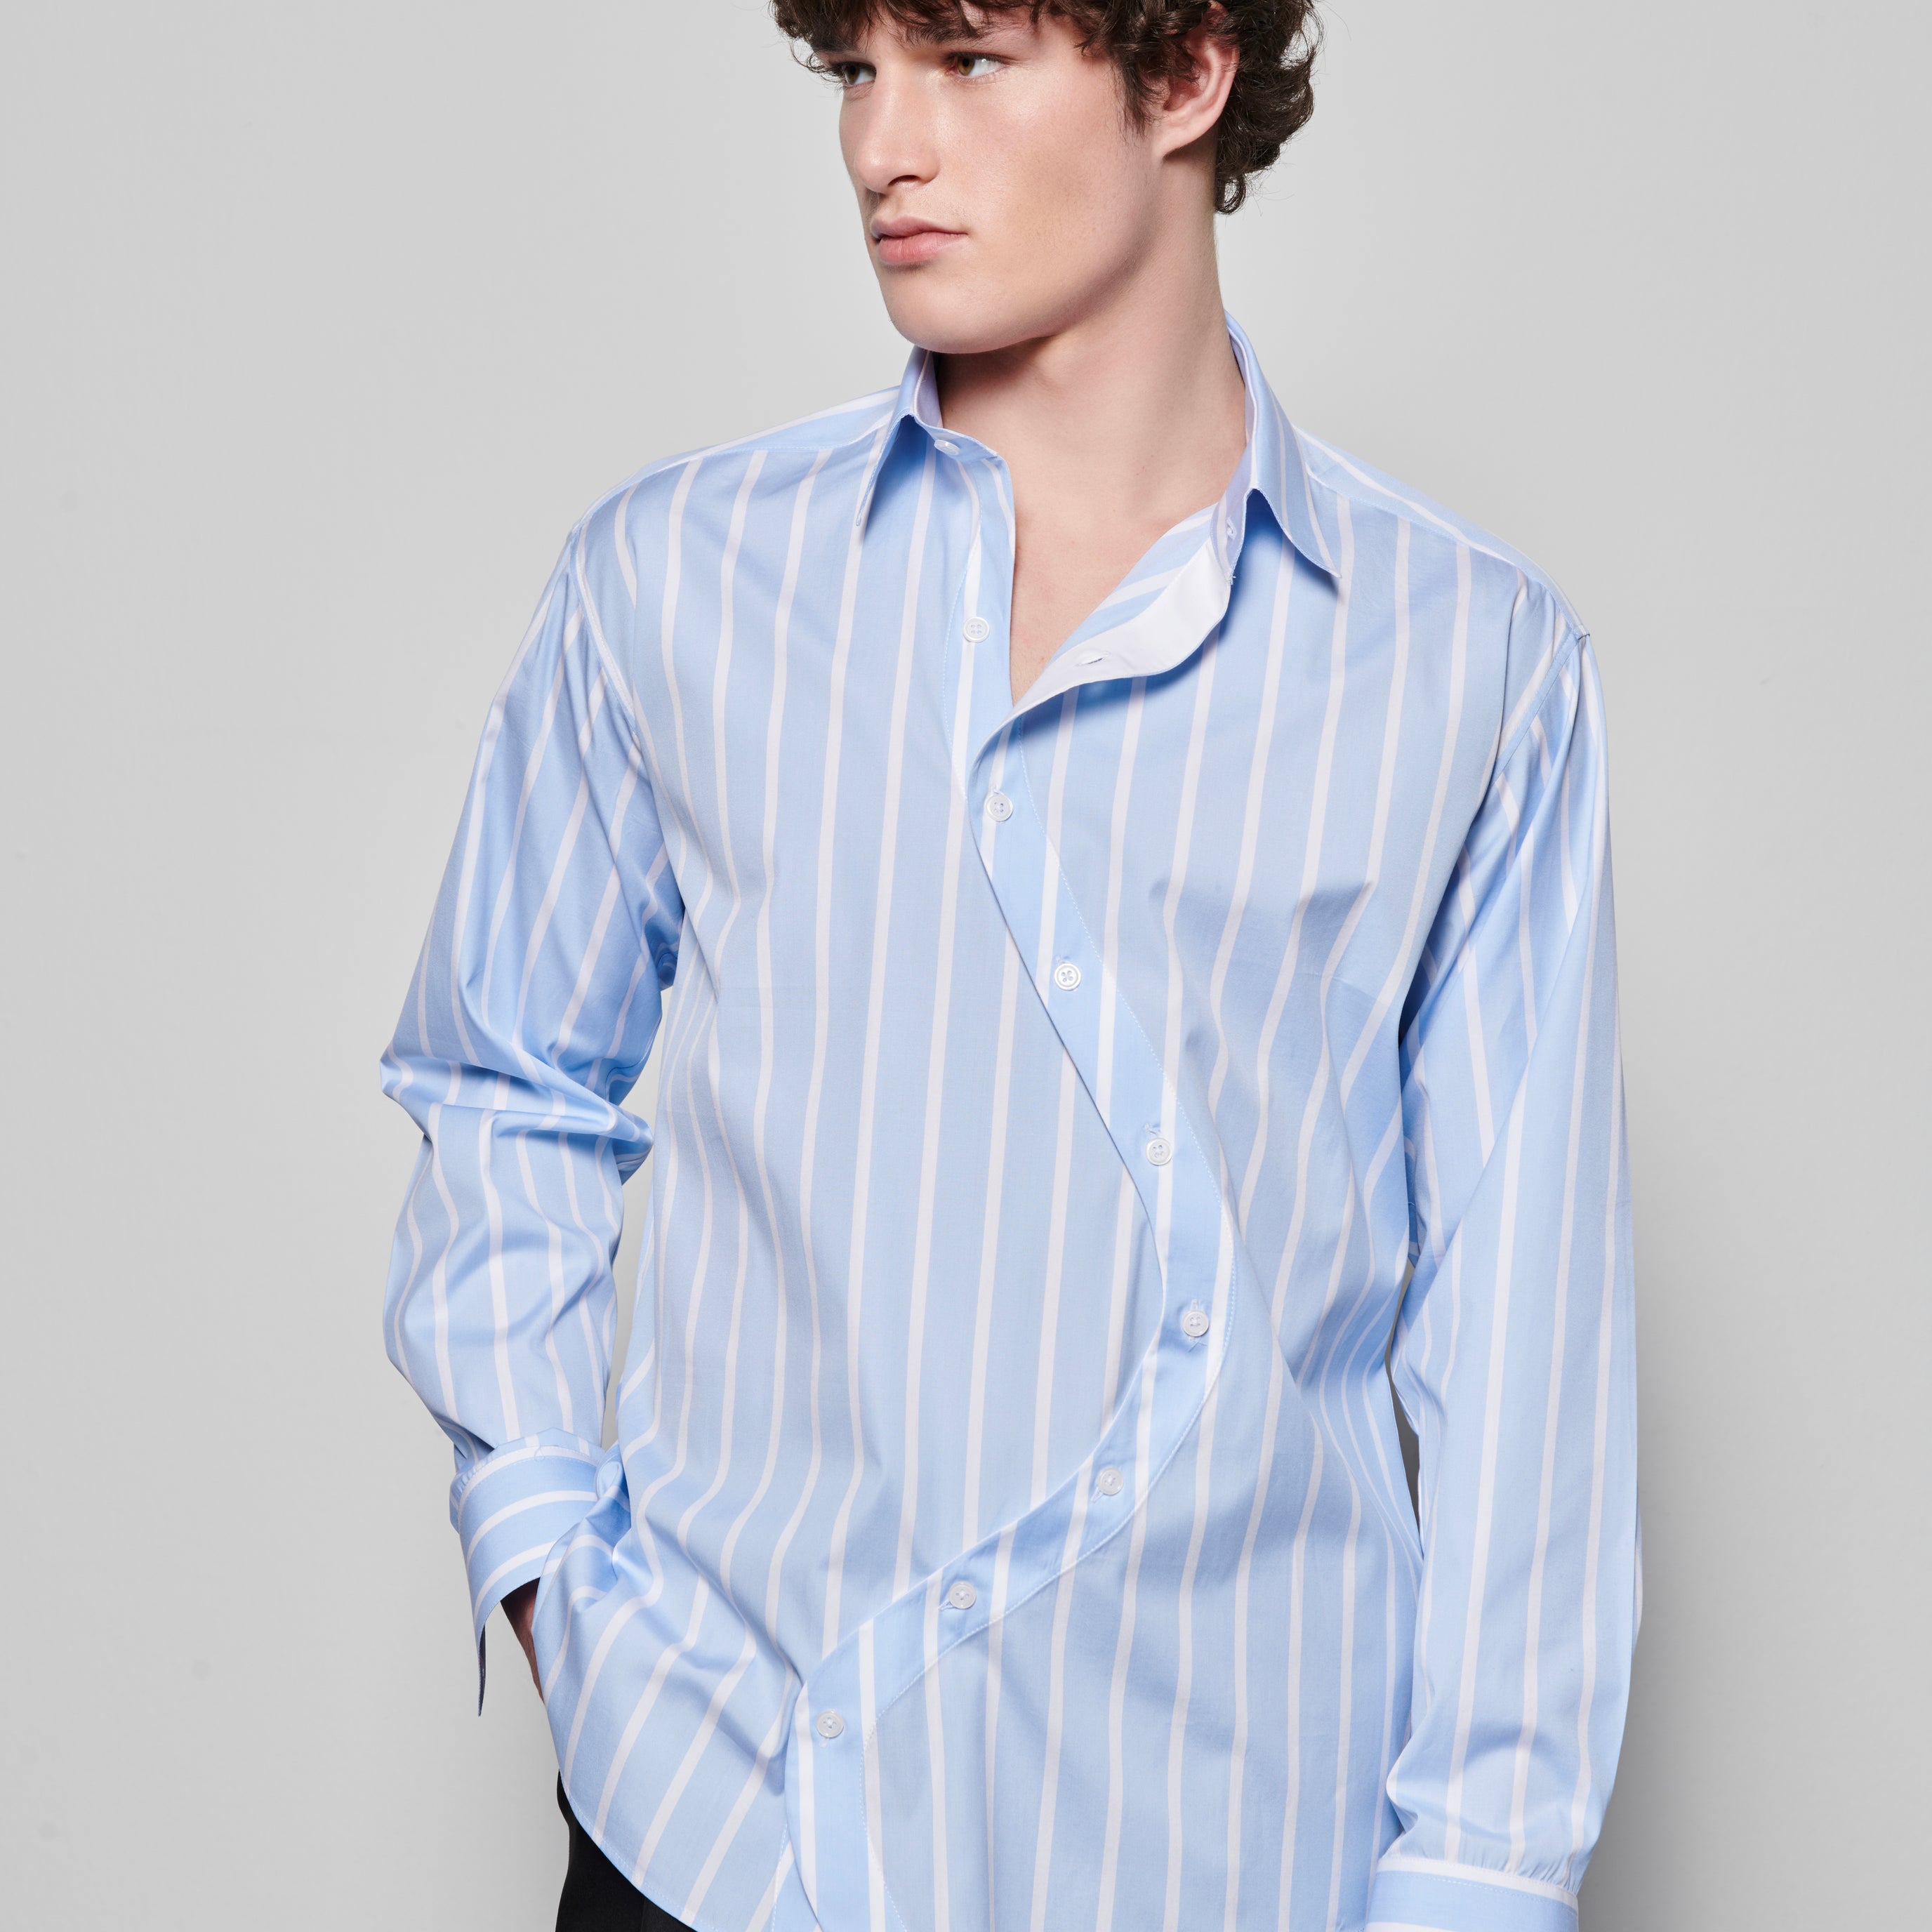 KKoncept Men's | Designer Shirts, Pants, Striped Blazer & More